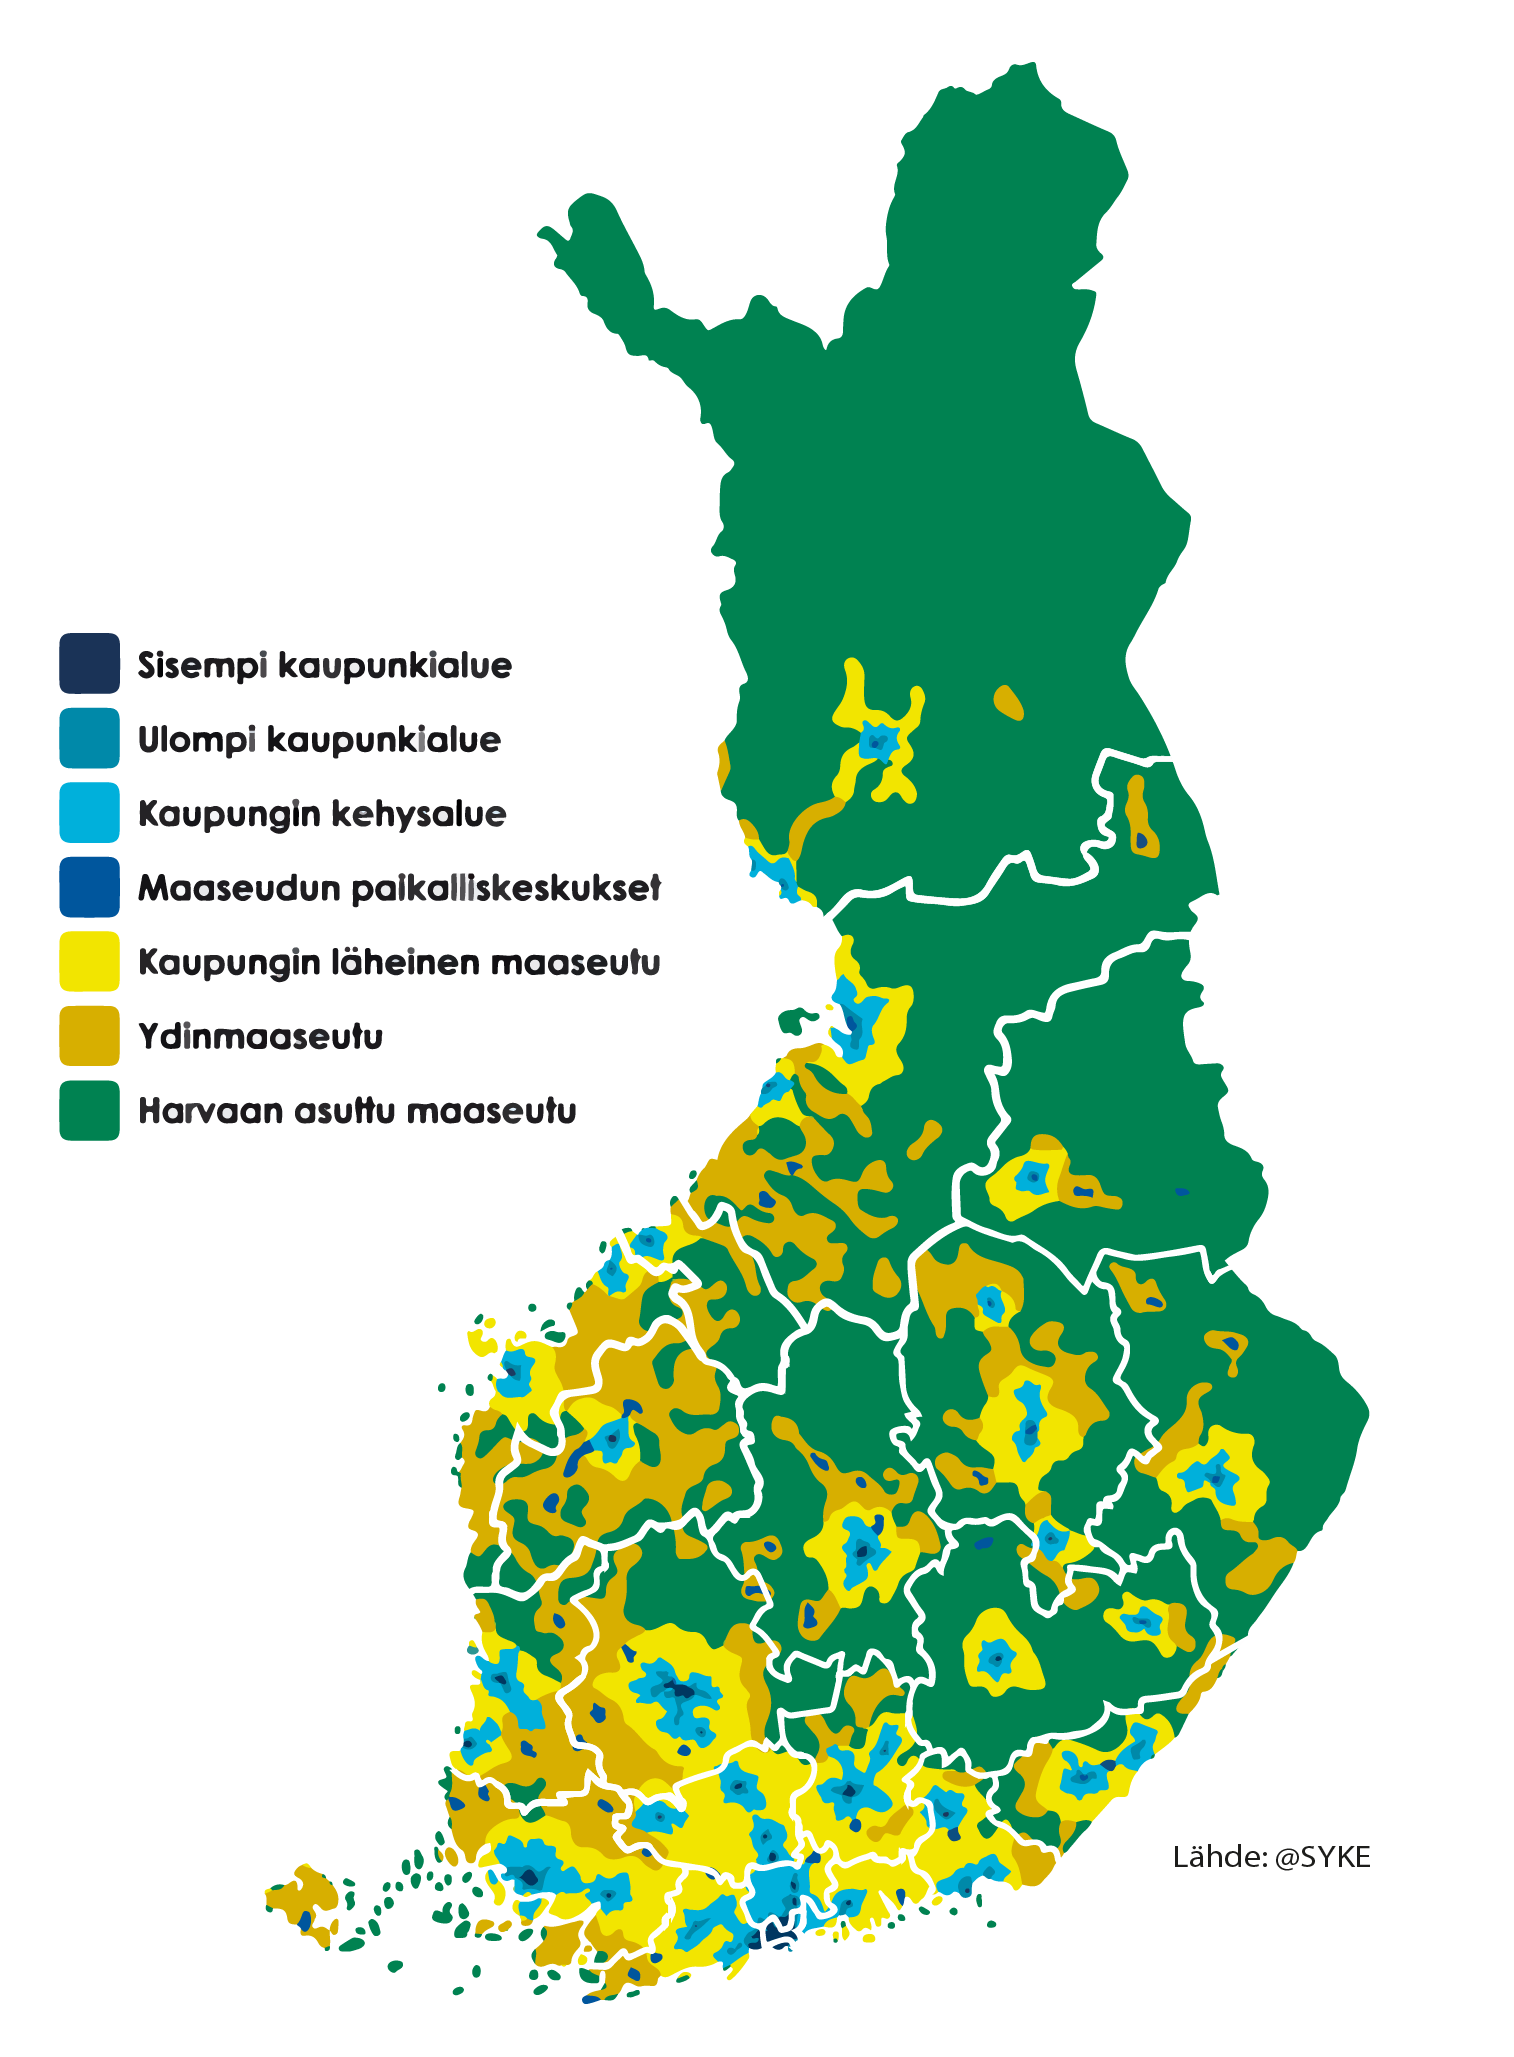 Kaupunki-maaseutu-luokitus hyvinvointialuerajauksilla (karttalähde @SYKE)